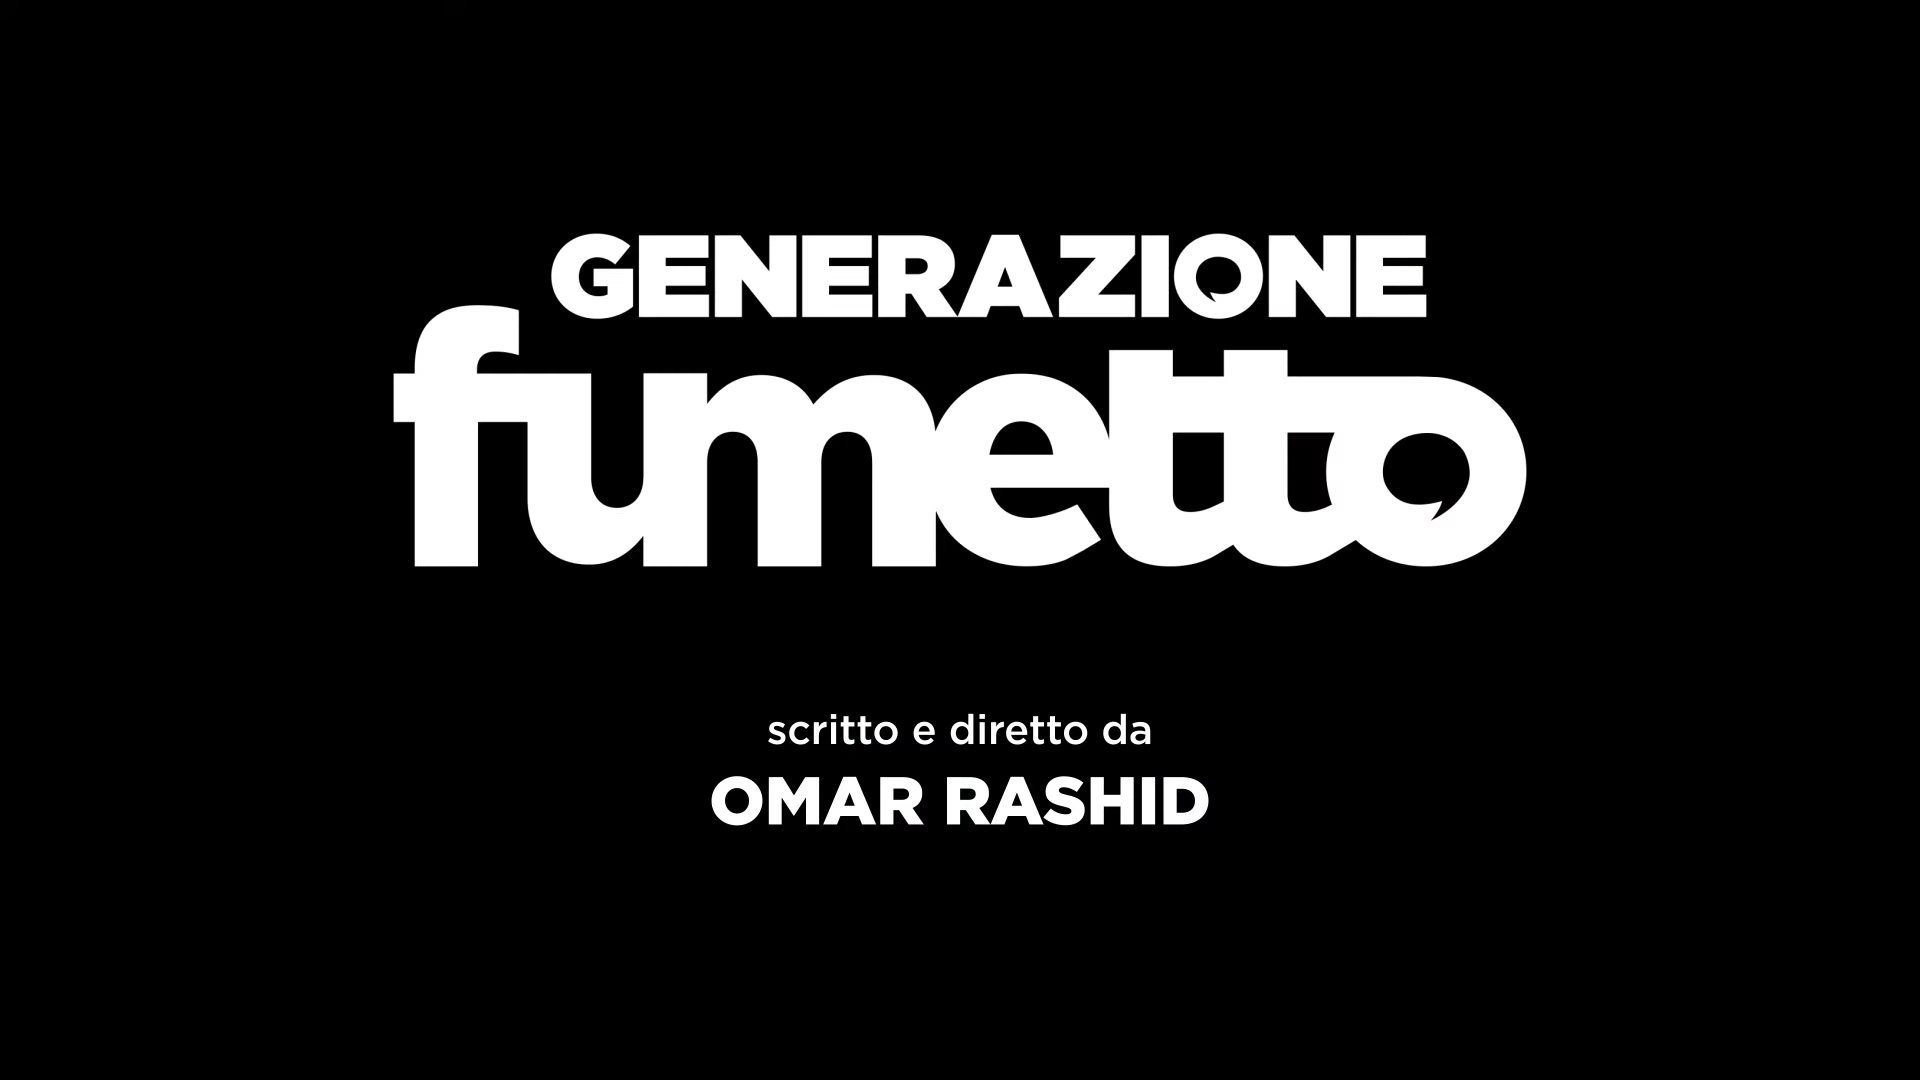 Generazione fumetto, ecco il documentario di Omar Rashid sul nuovo fumetto italiano